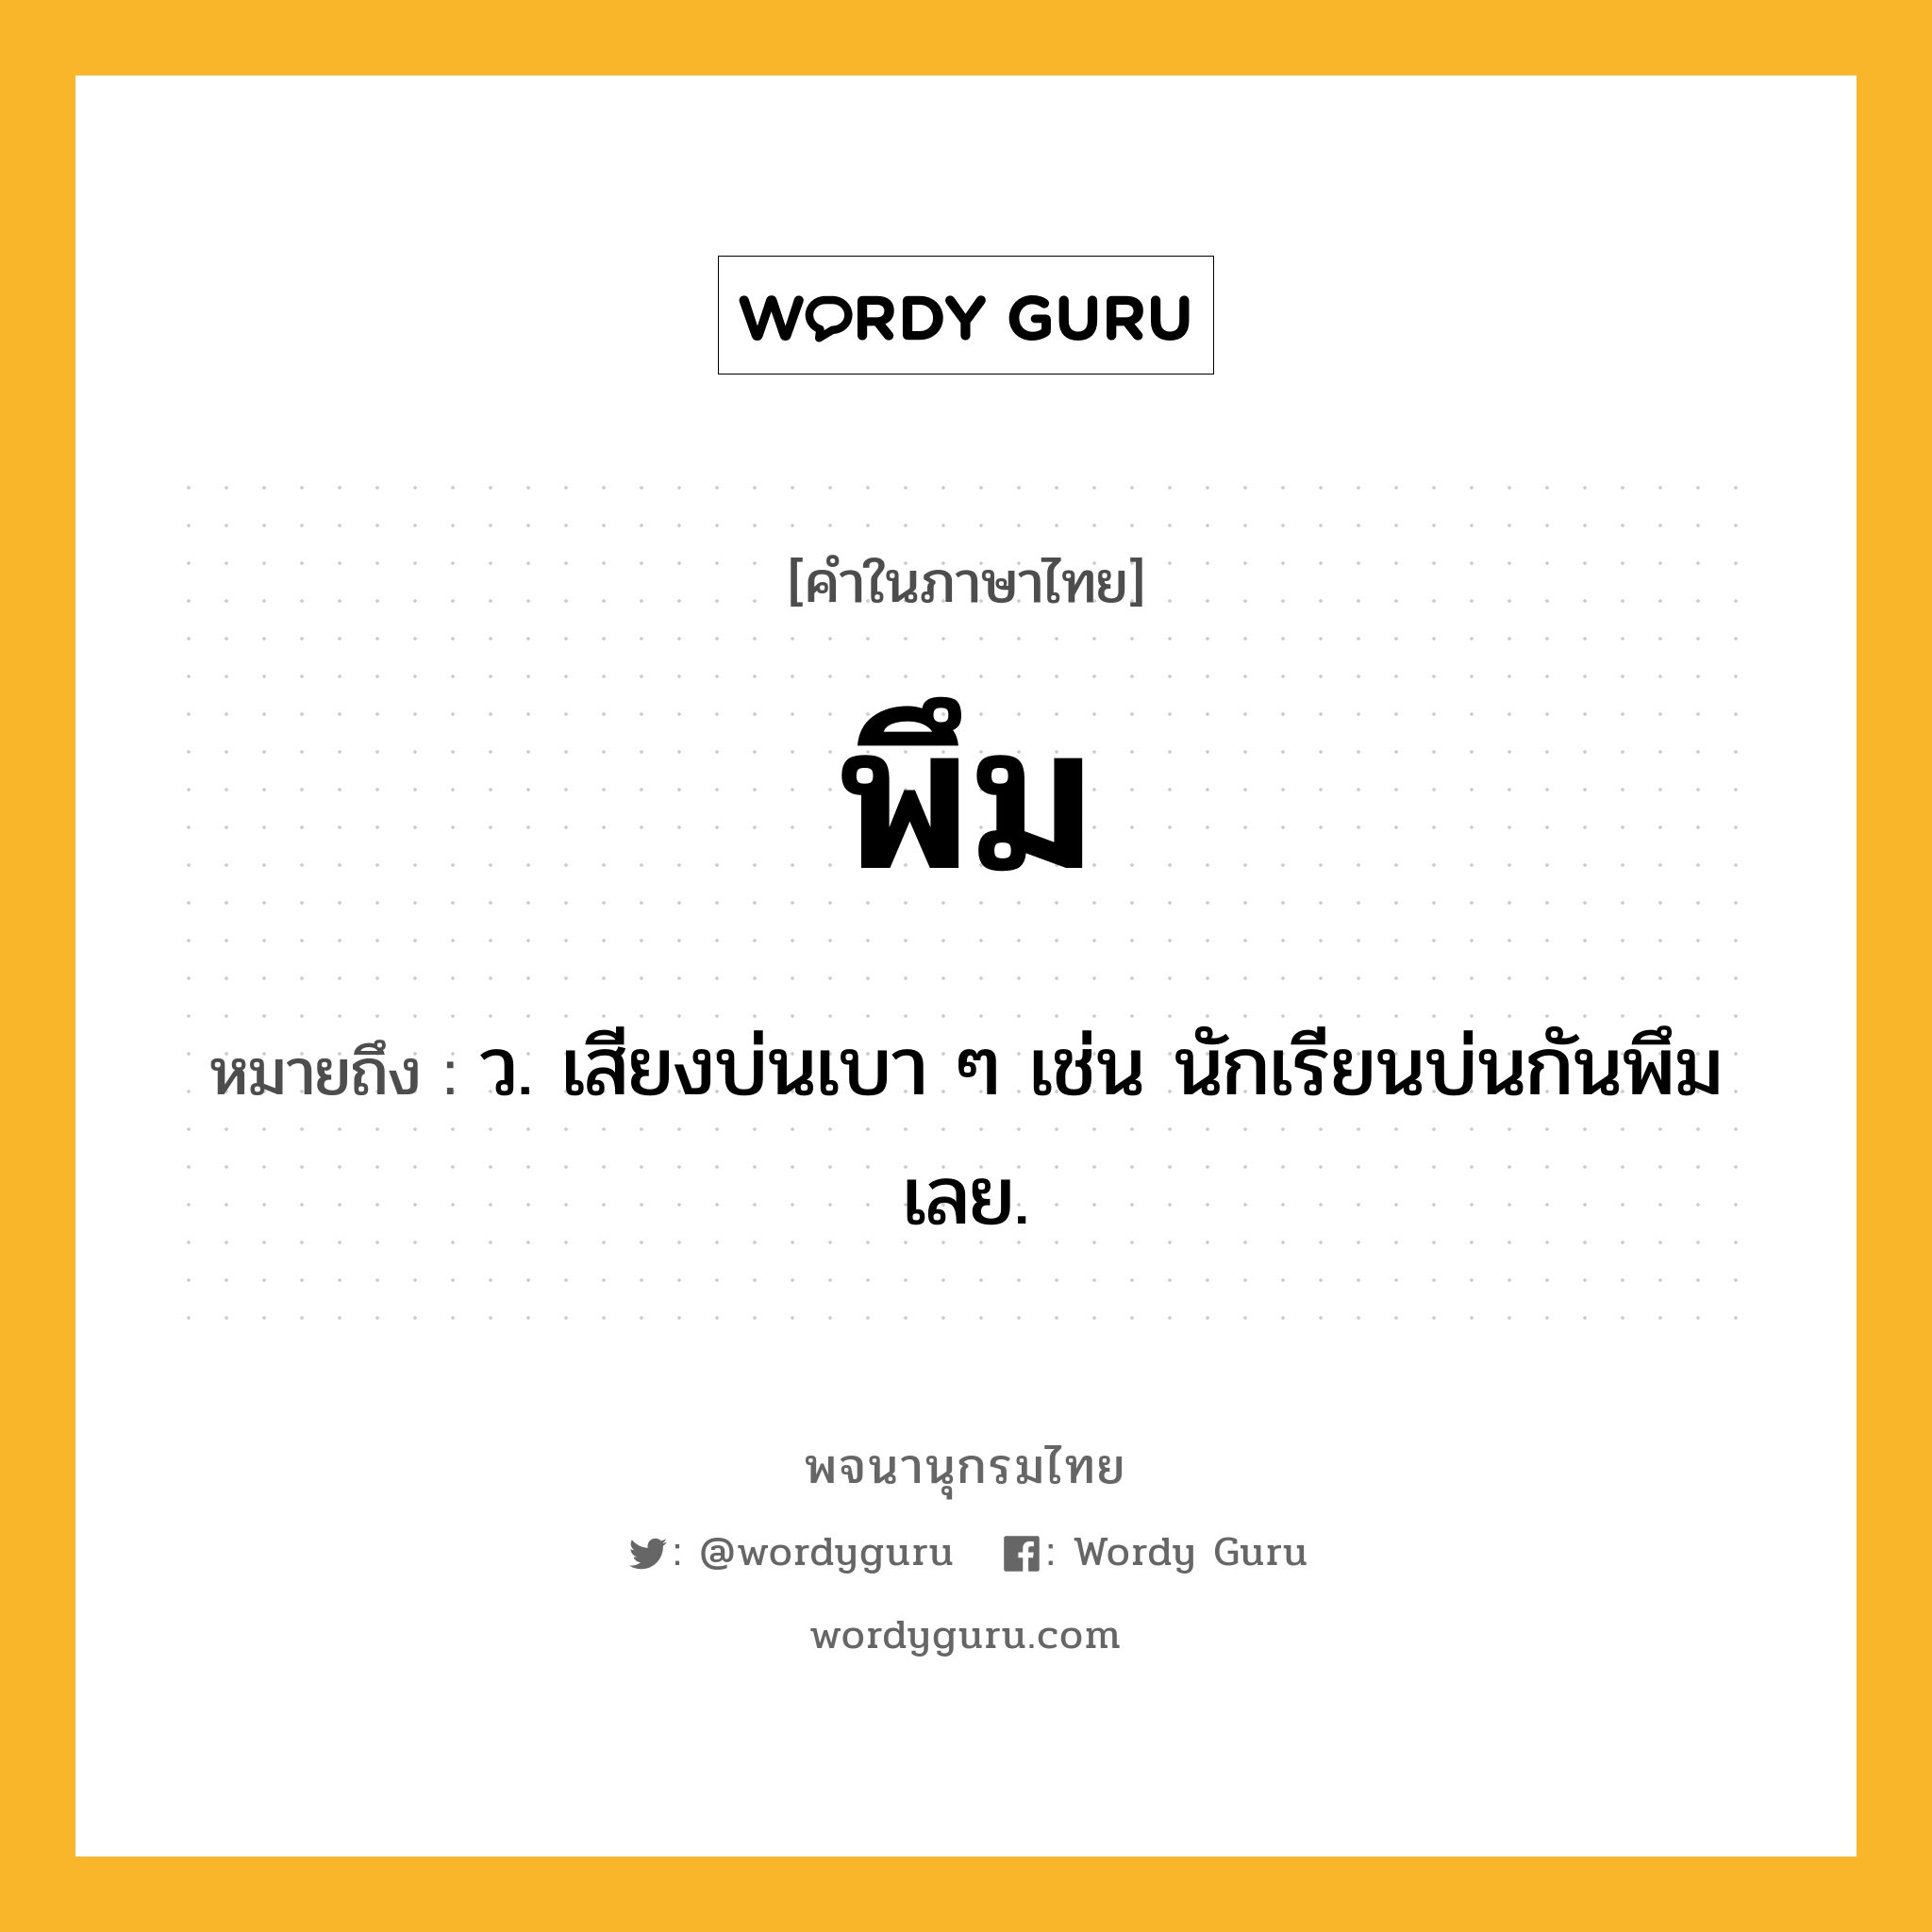 พึม หมายถึงอะไร?, คำในภาษาไทย พึม หมายถึง ว. เสียงบ่นเบา ๆ เช่น นักเรียนบ่นกันพึมเลย.